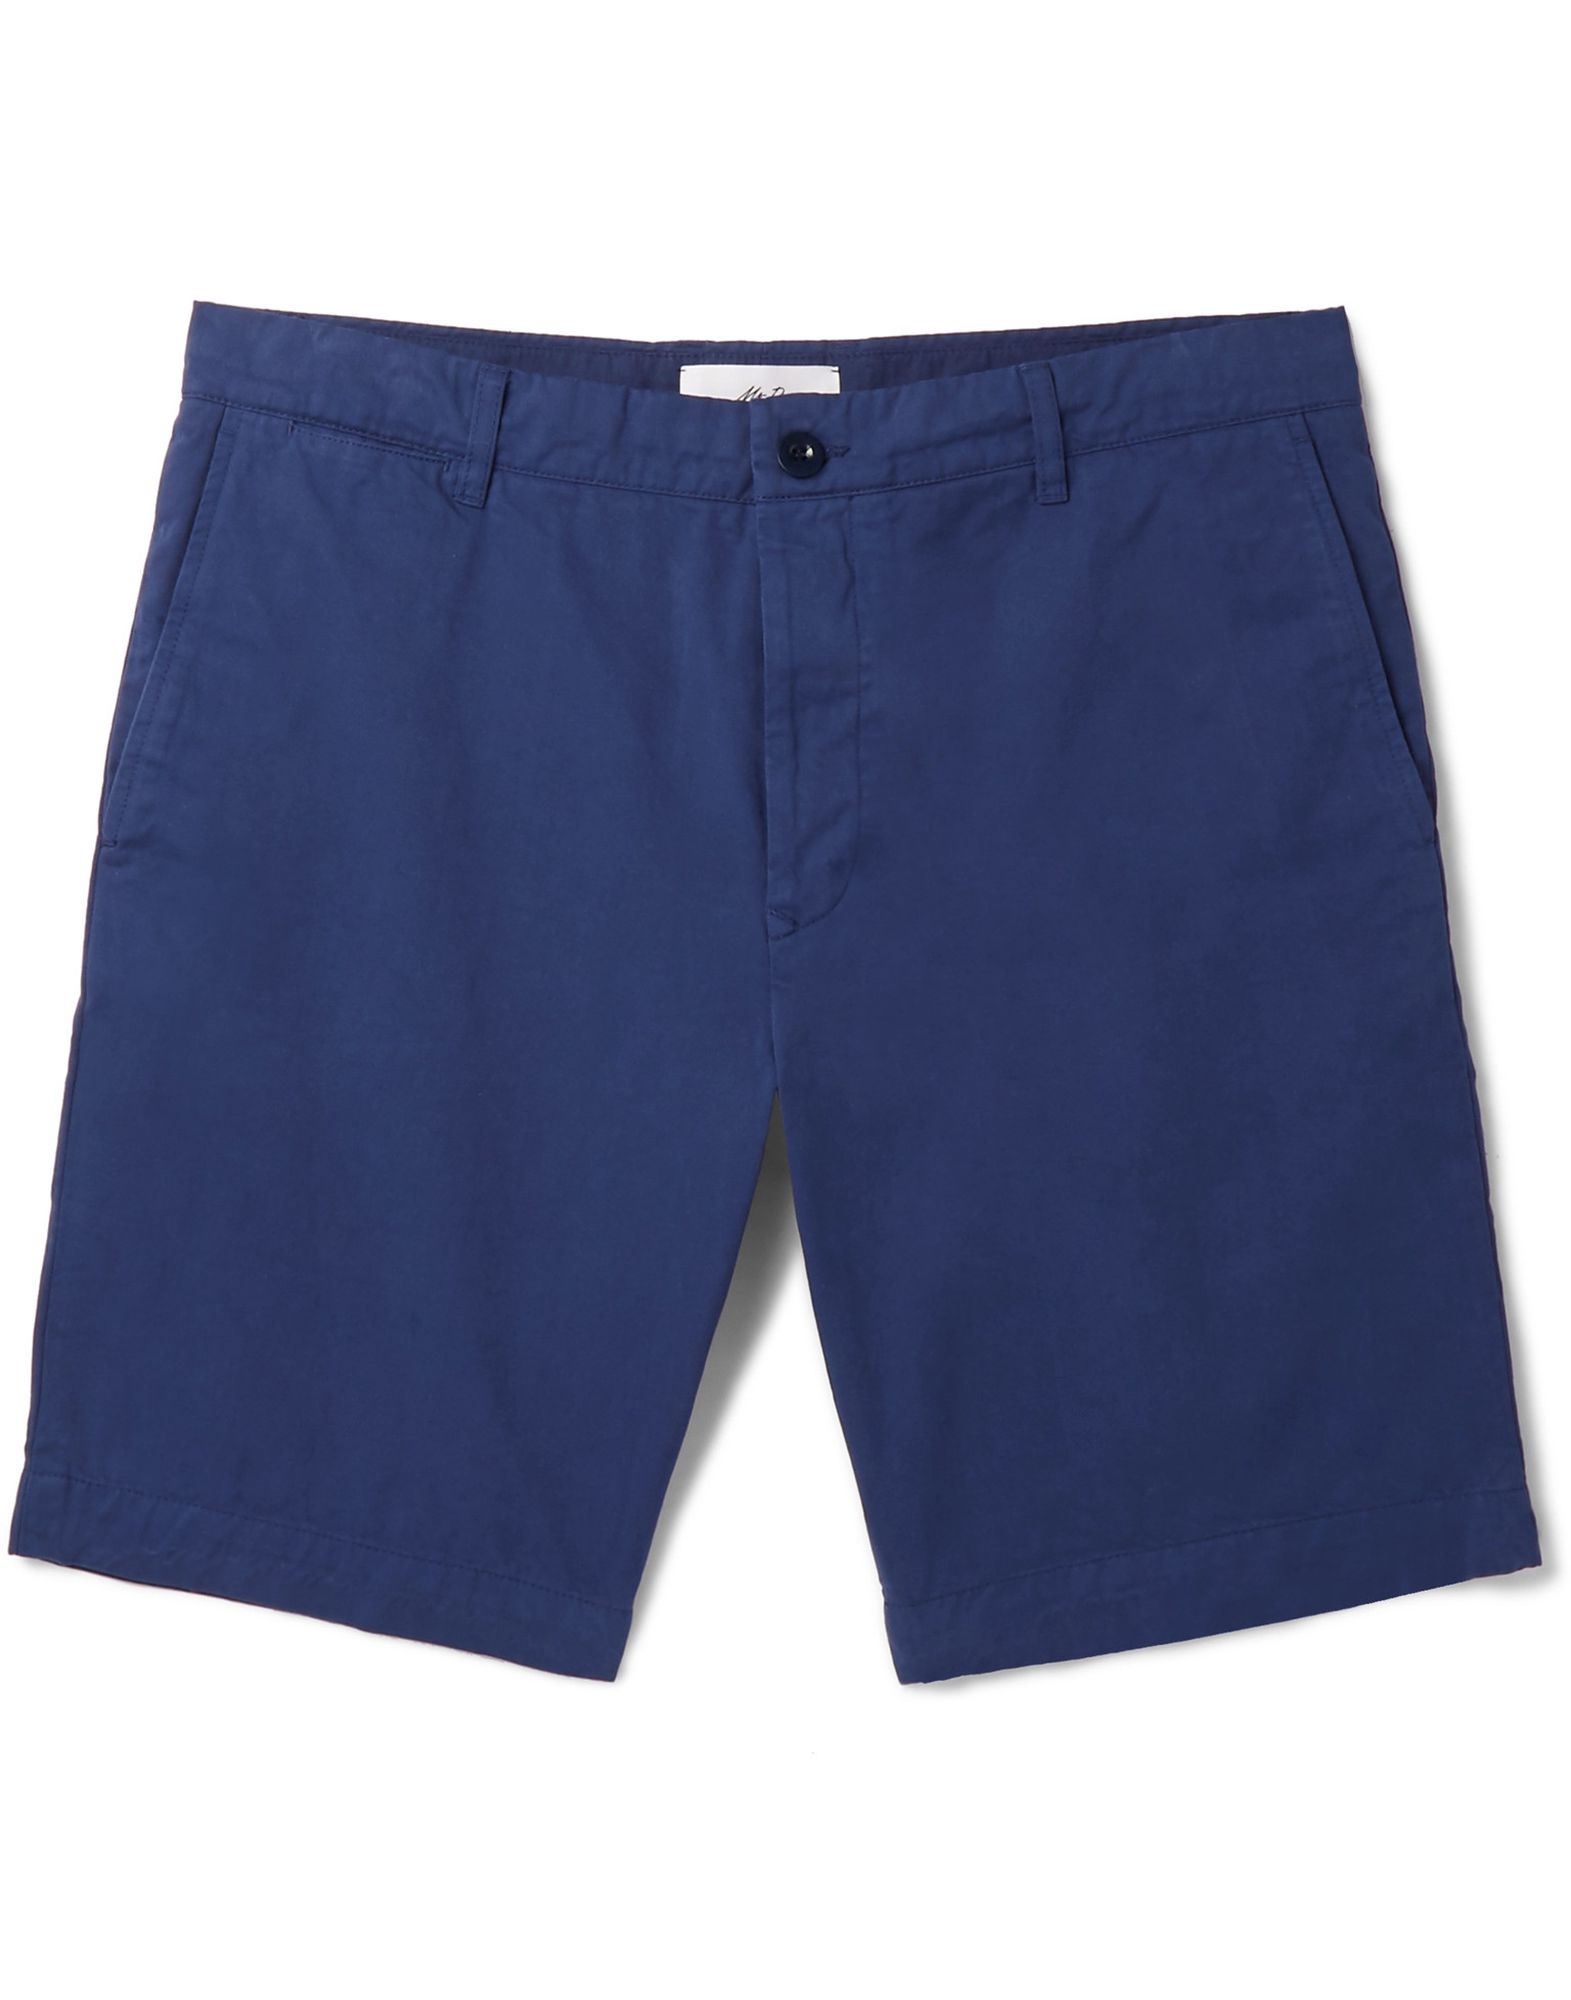 MR P. Shorts & Bermuda Shorts